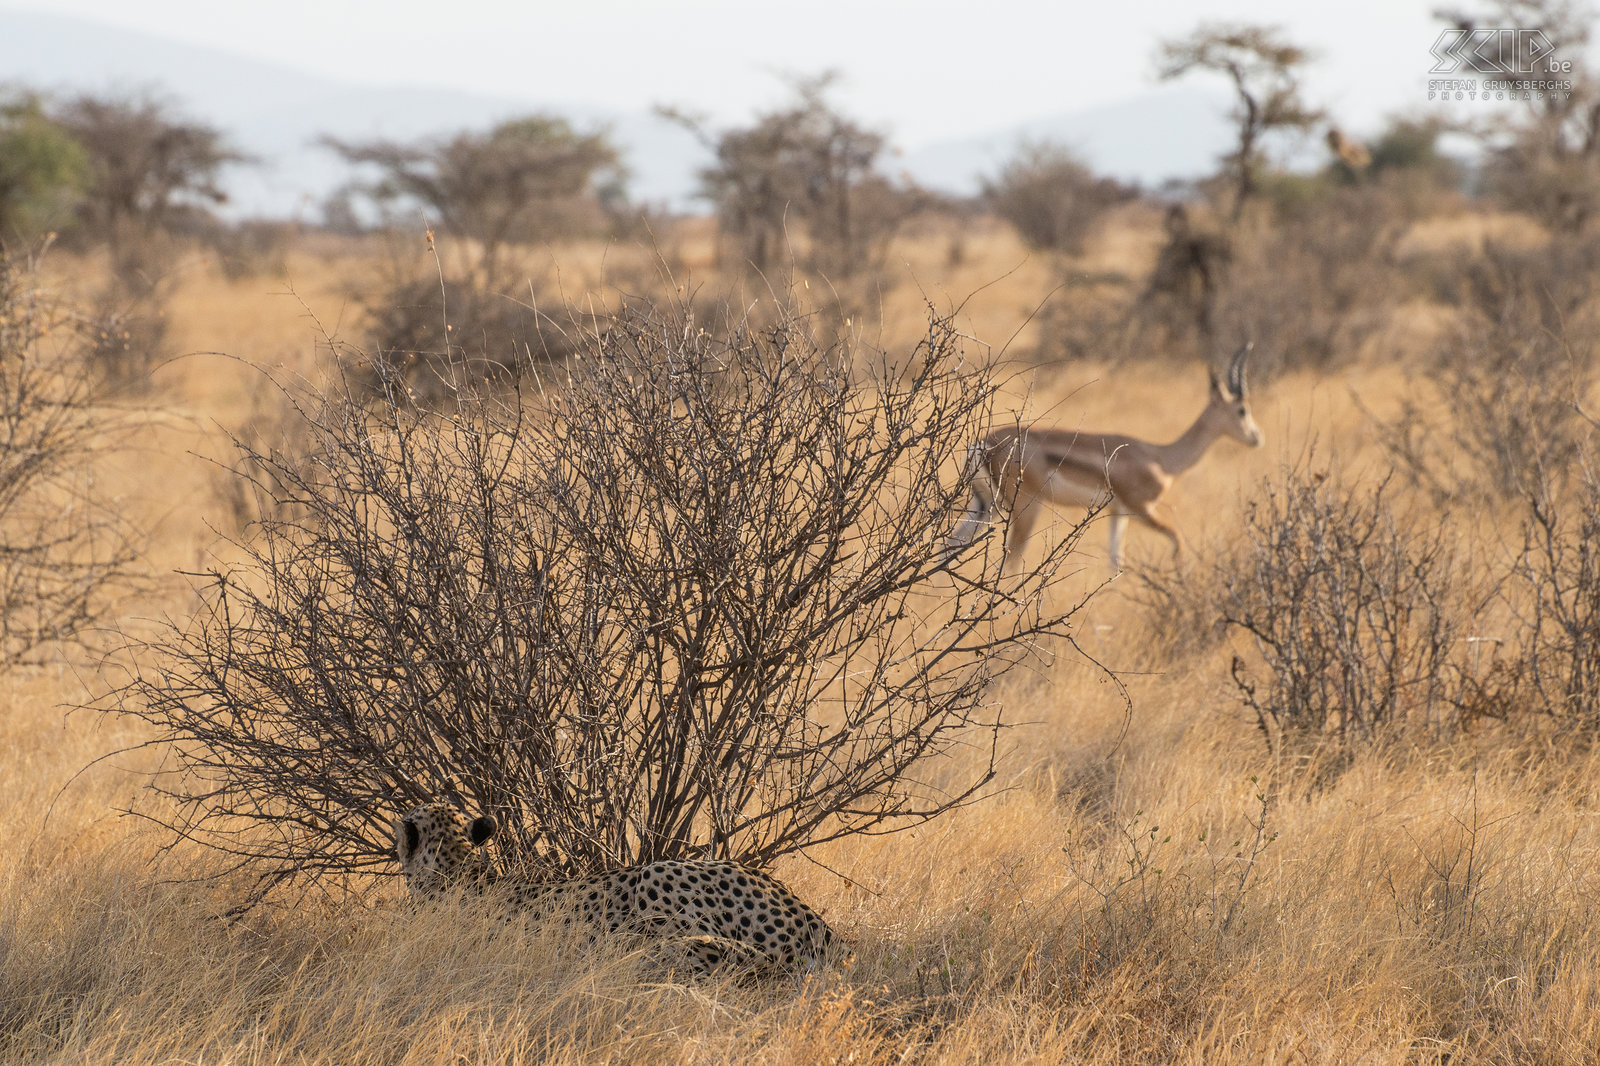 Samburu - Cheeta klaar voor aanval Plotseling zag de cheeta 3 grant gazellen die in zijn richting kwamen. Hij kroop naar een ander nabijgelegen struikje en ging er liggen wachtend om een aanval te starten. Ongeveer 40 tot 50 procent van de aanvallen van een cheeta eindigen succesvol, dat zijn zowat de laagste succeskansen van de Afrikaanse grote katten. We waren opgewonden en aan het wachten op een aanval, maar uiteindelijk besloot de cheeta dat zijn kansen niet groot genoeg waren. Stefan Cruysberghs